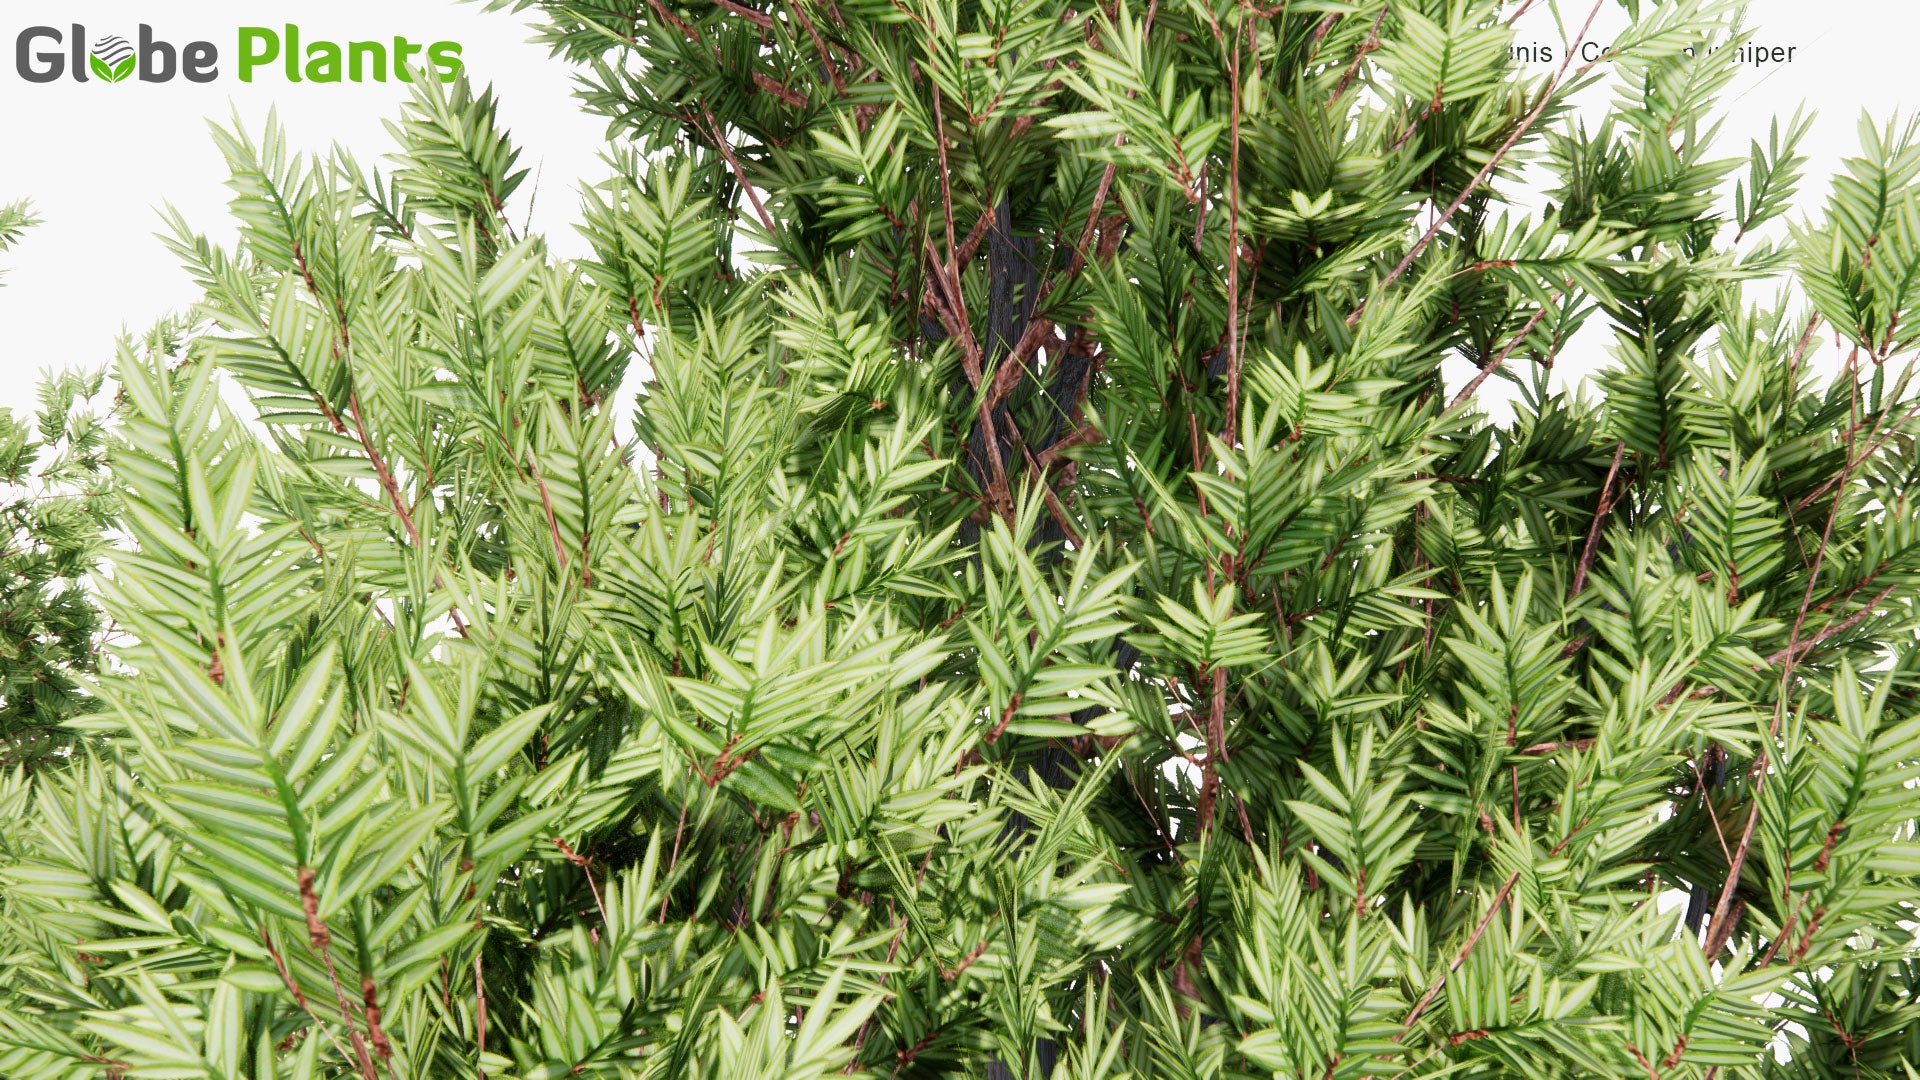 Low Poly Juniperus Communis - Common Juniper (3D Model)